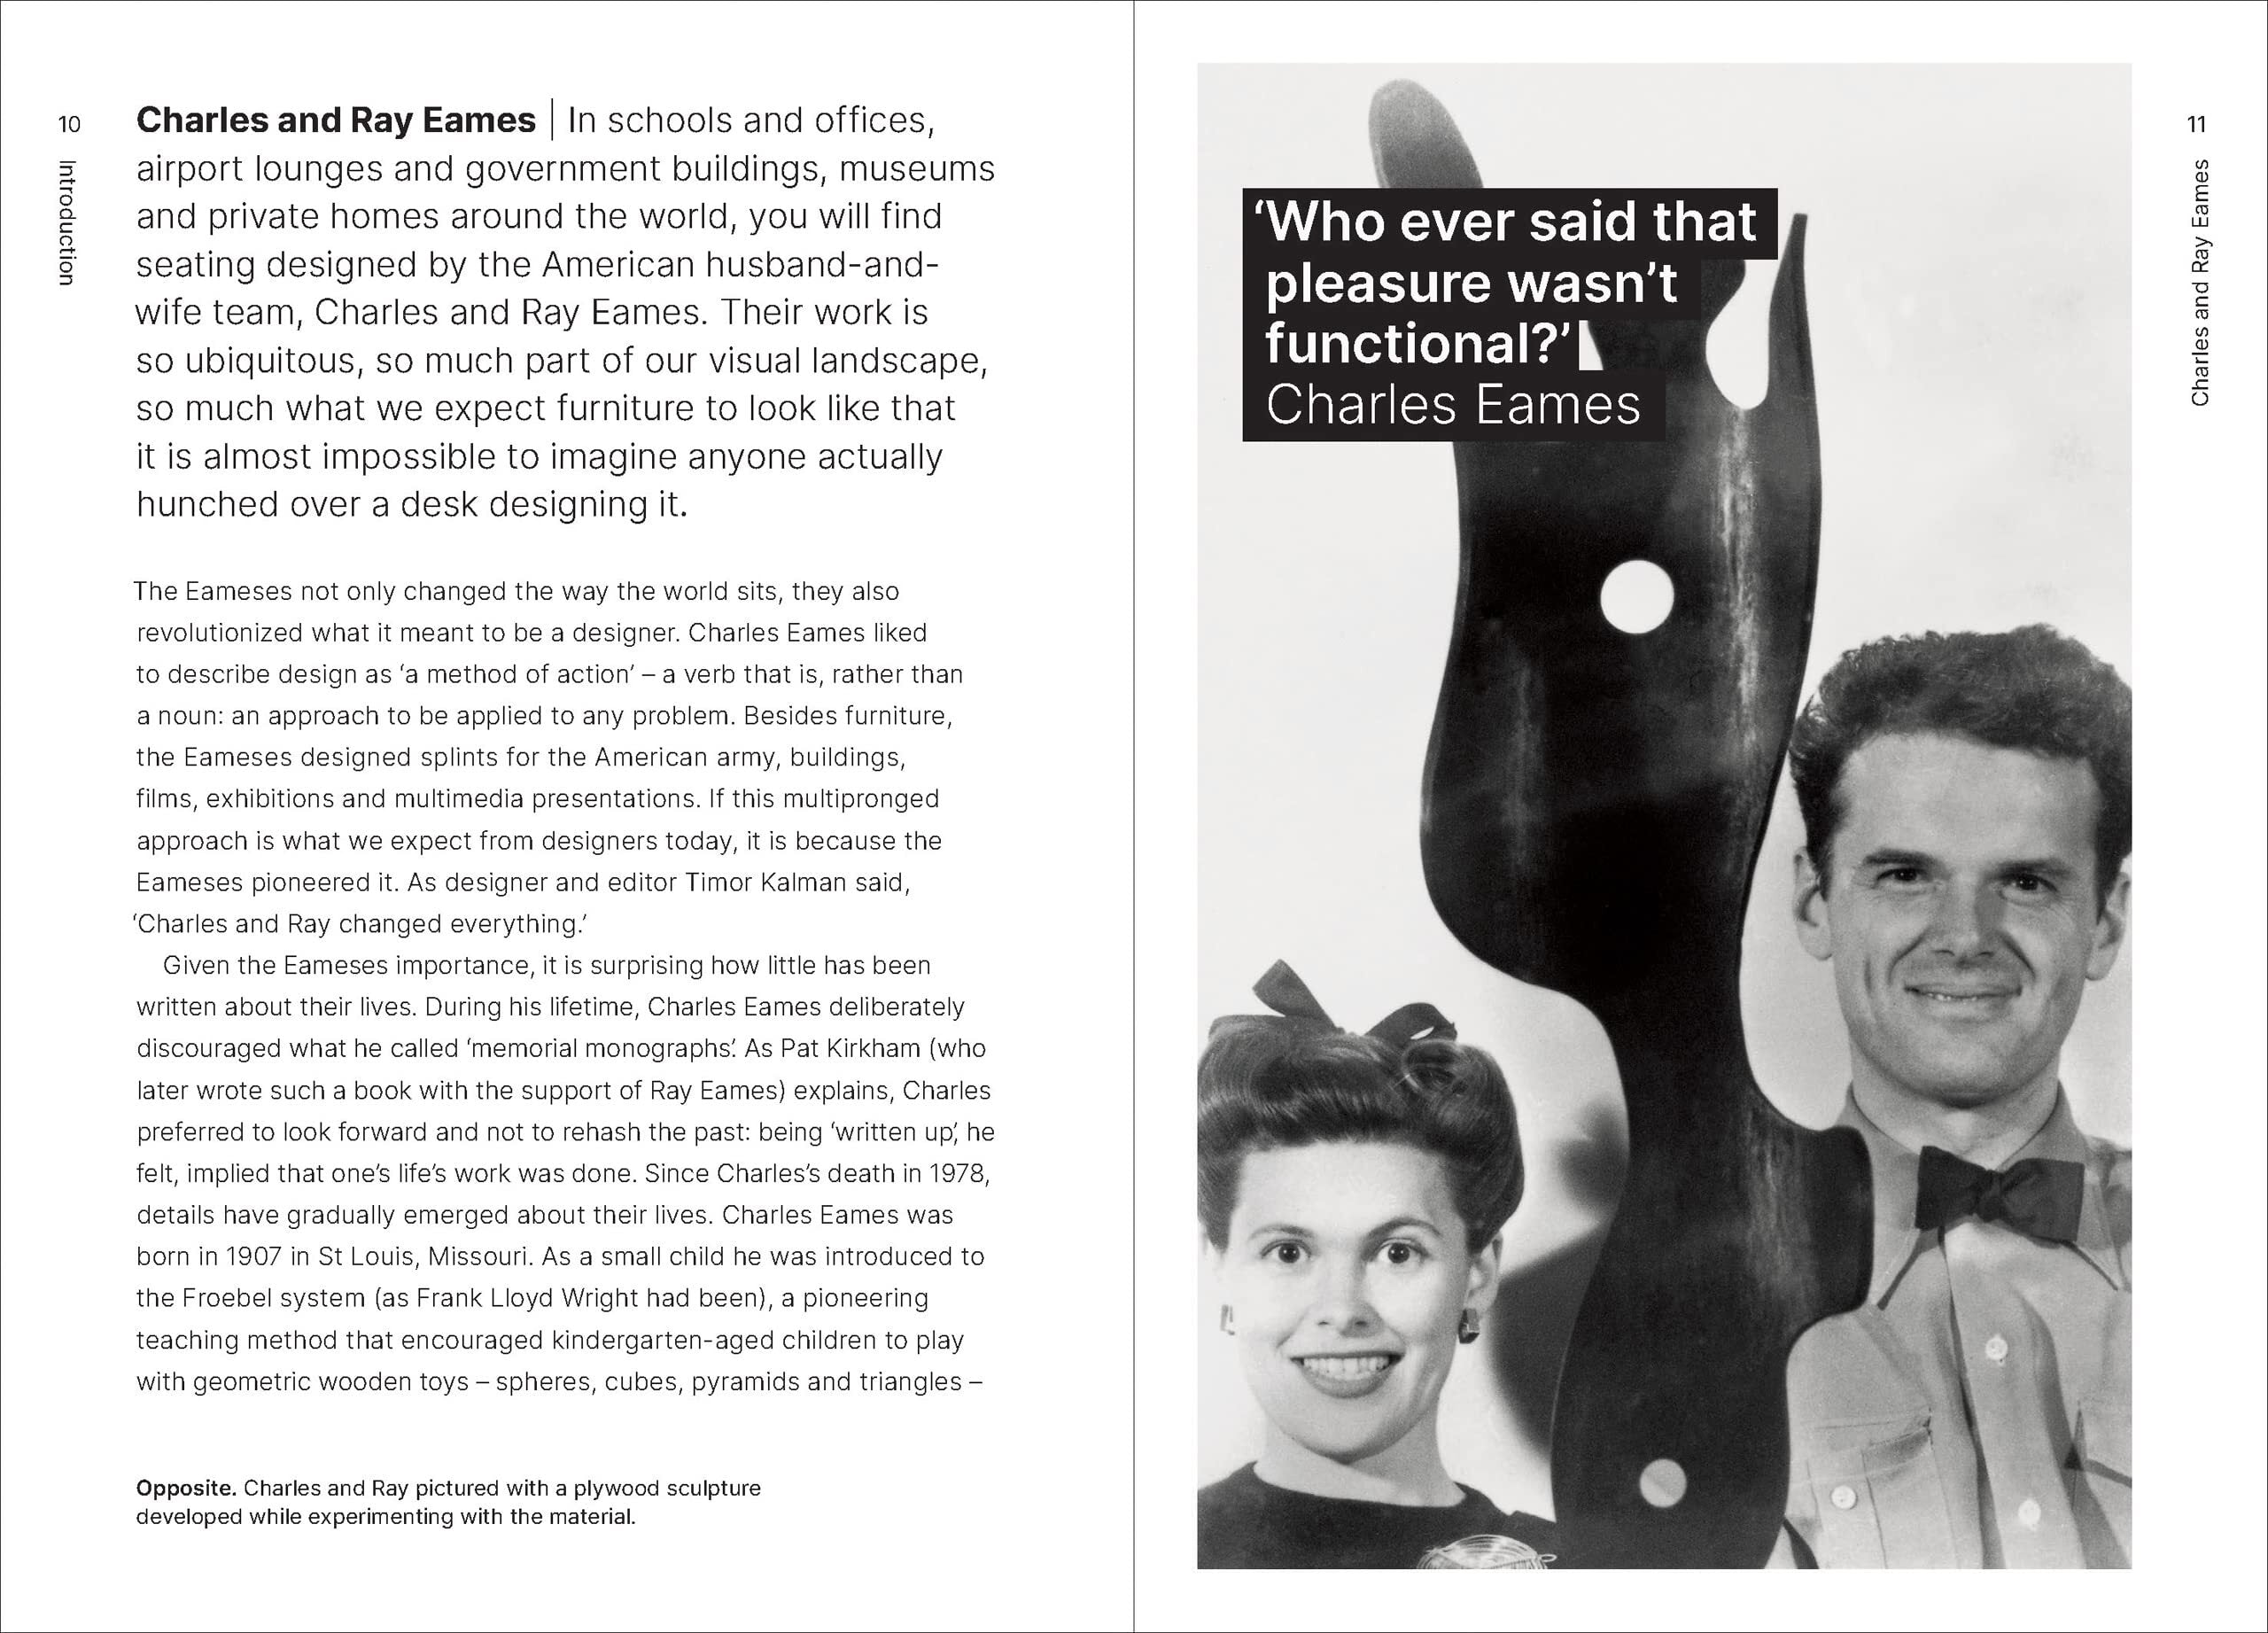 Design Monograph: Eames